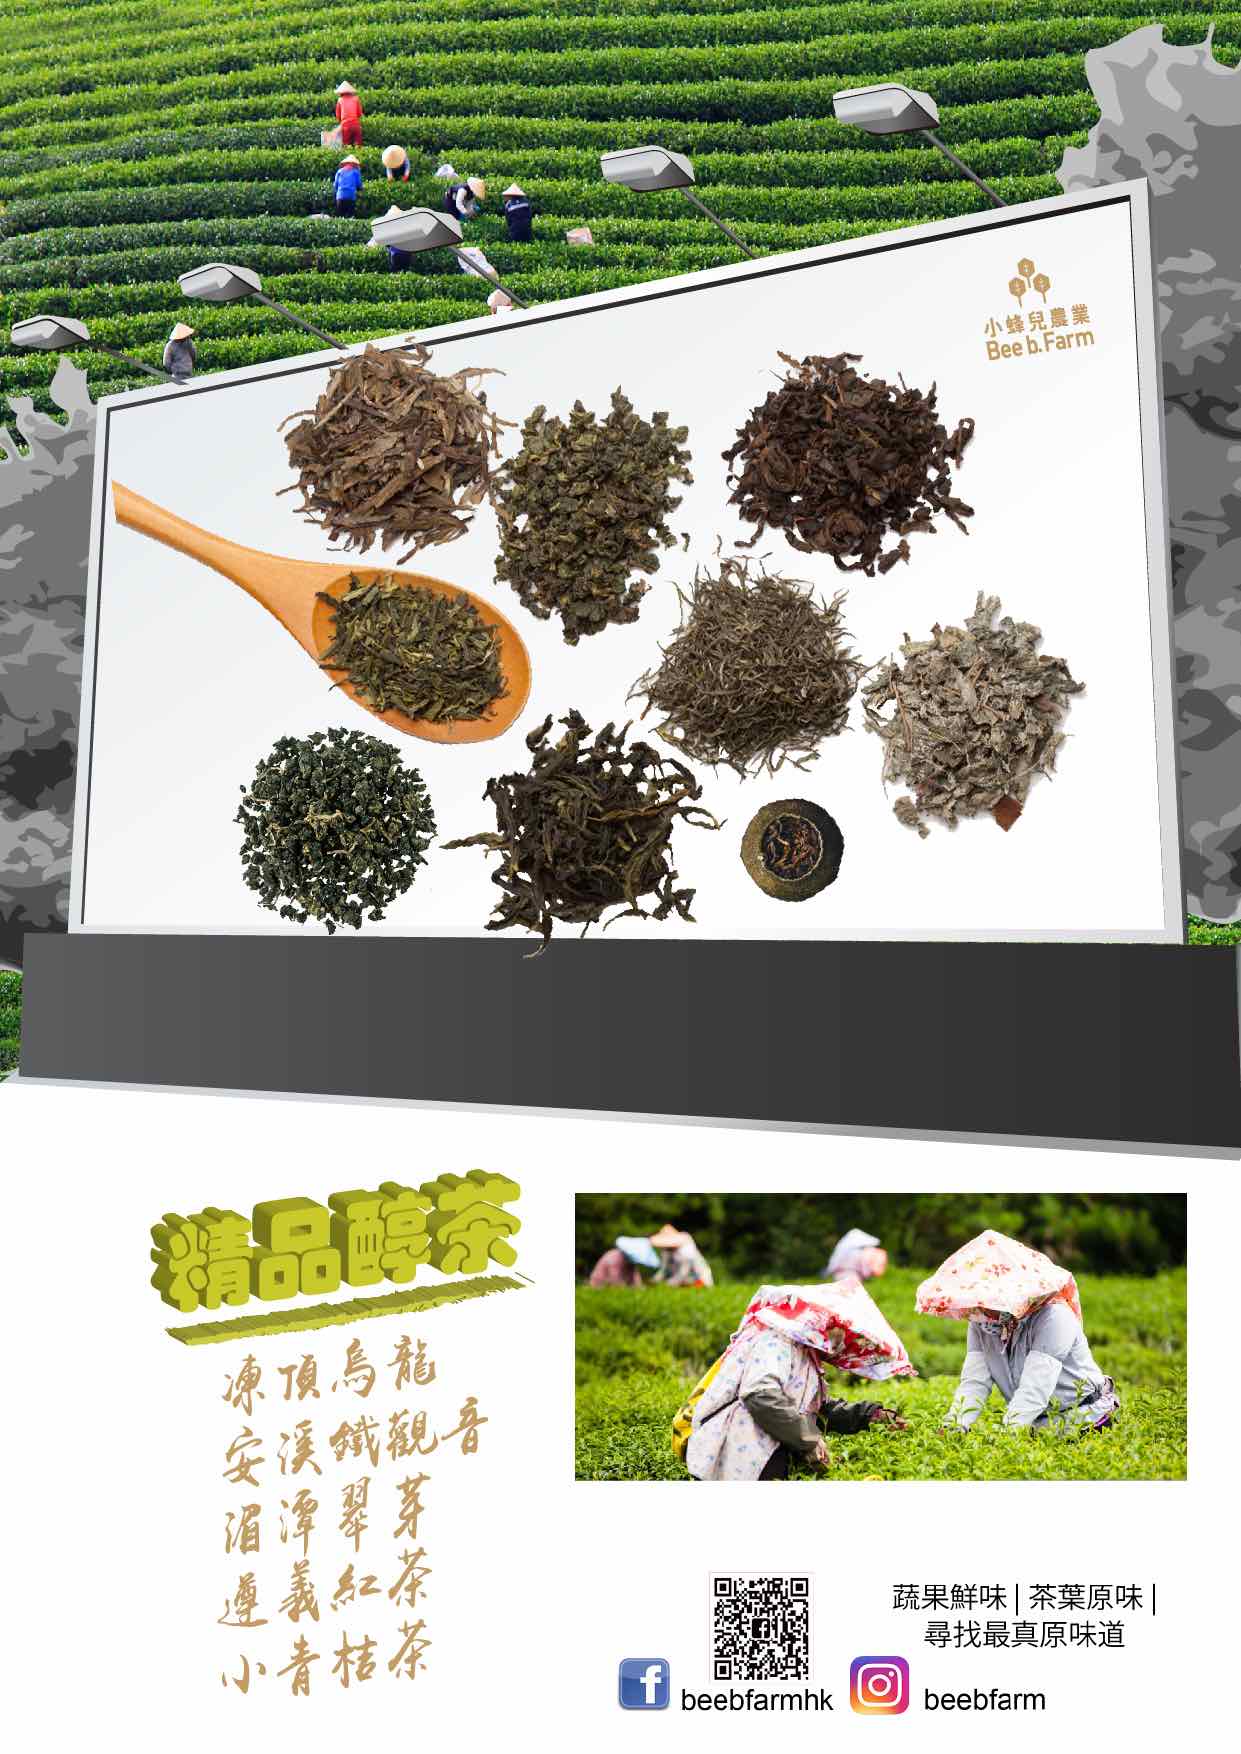 小蜂兒農業的特許經營香港區加盟店項目3